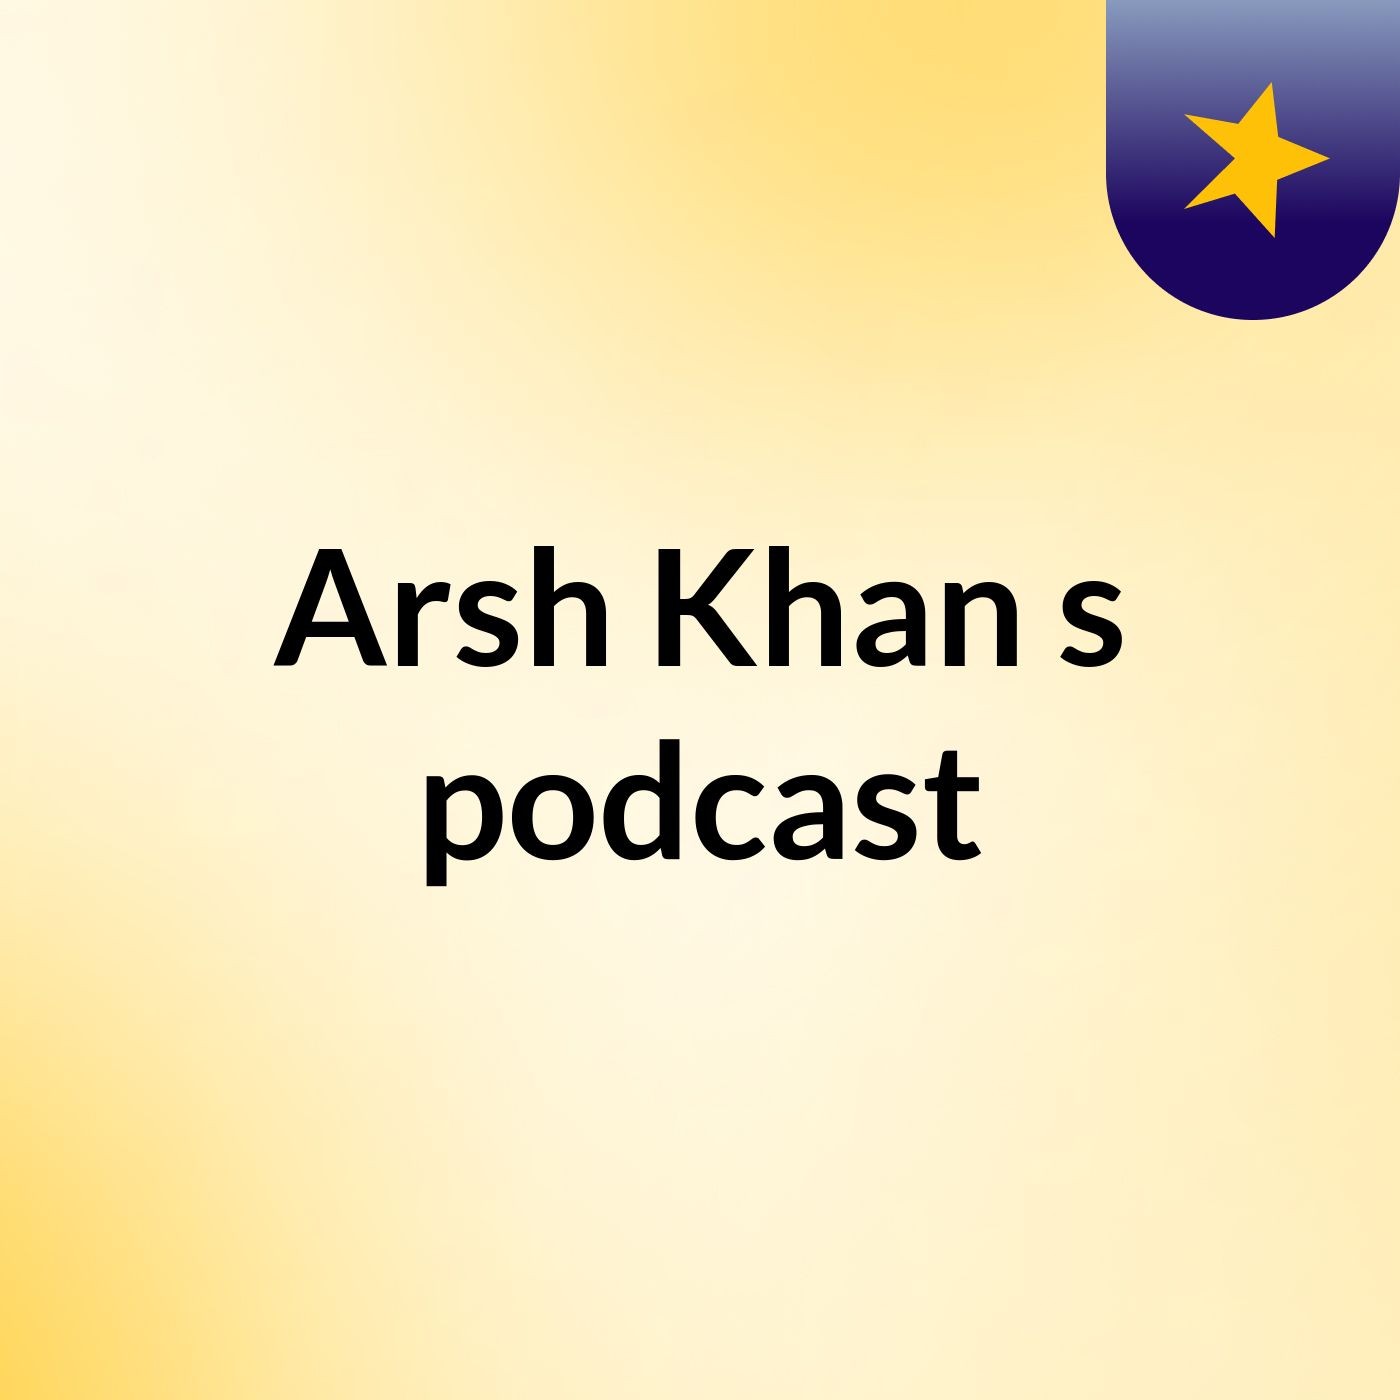 Episodeaajajajja 4 - Arsh Khan's podcast